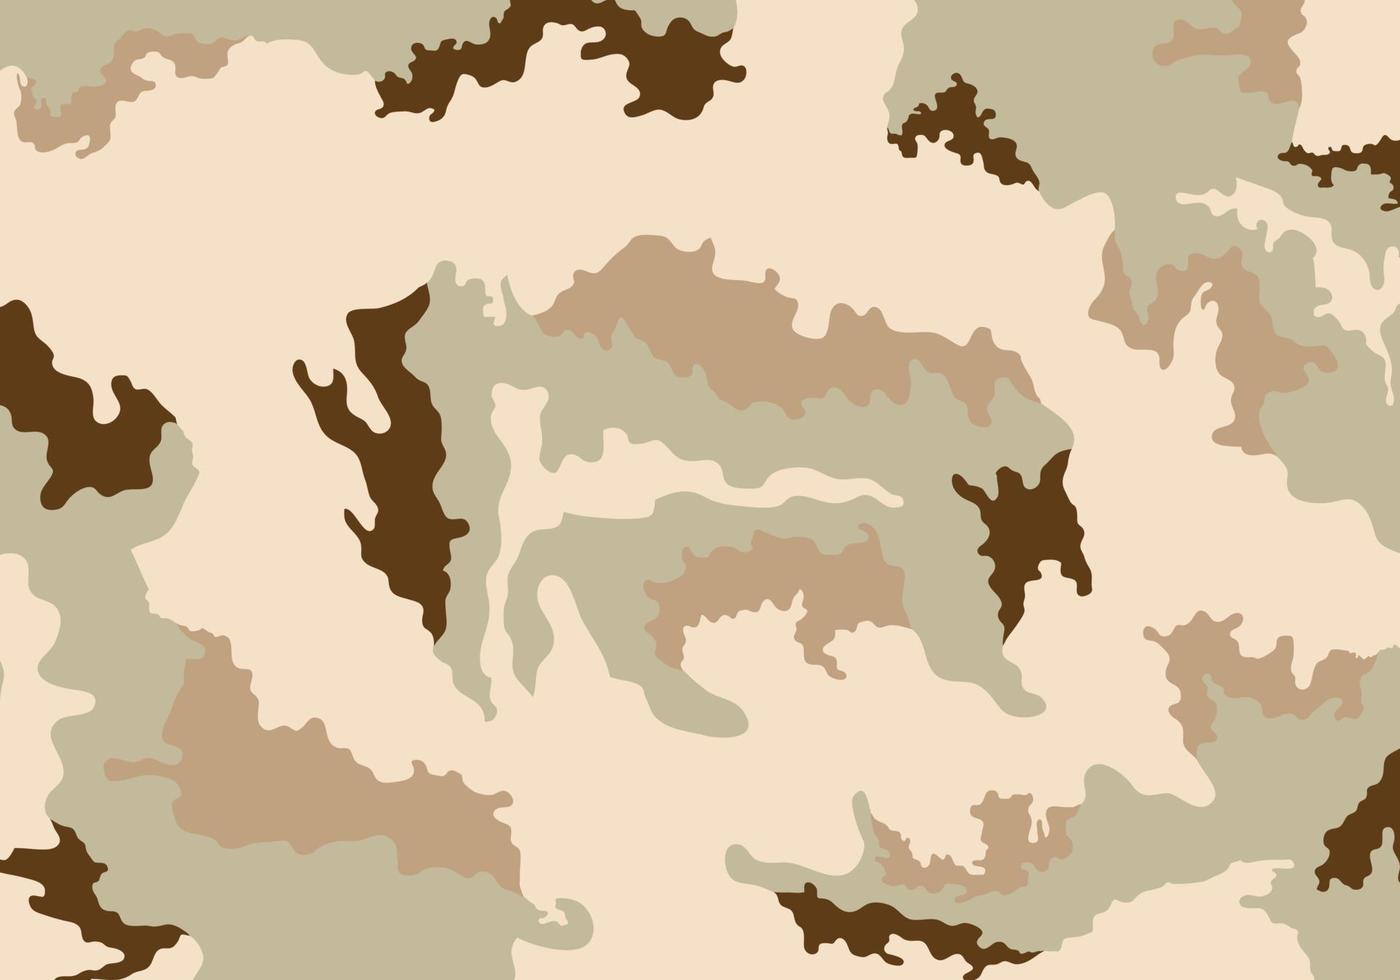 Camouflage-Soldaten-Musterdesign, Camouflage-Uniform-Wüstendruck-Kleidungsarmee-Soldaten-Braunmuster-Designhintergrund-Vektorillustration vektor